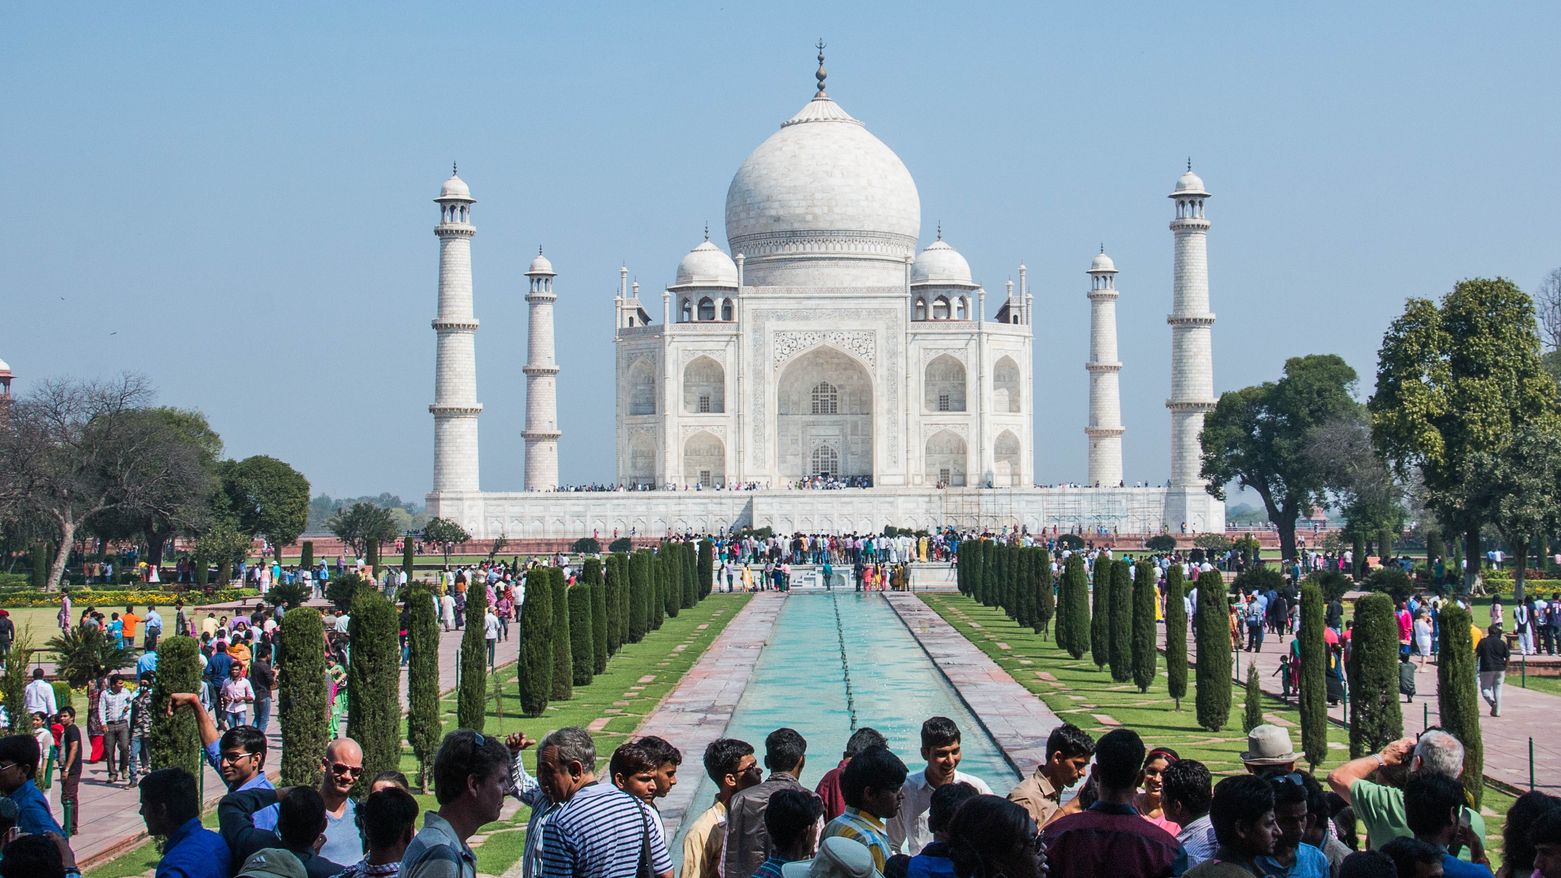 Das Taj Mahal in Indien lockt jährlich zehn Millionen Besucher an. Und ist ebenfalls Welterbe. (c) www.pixabay.com